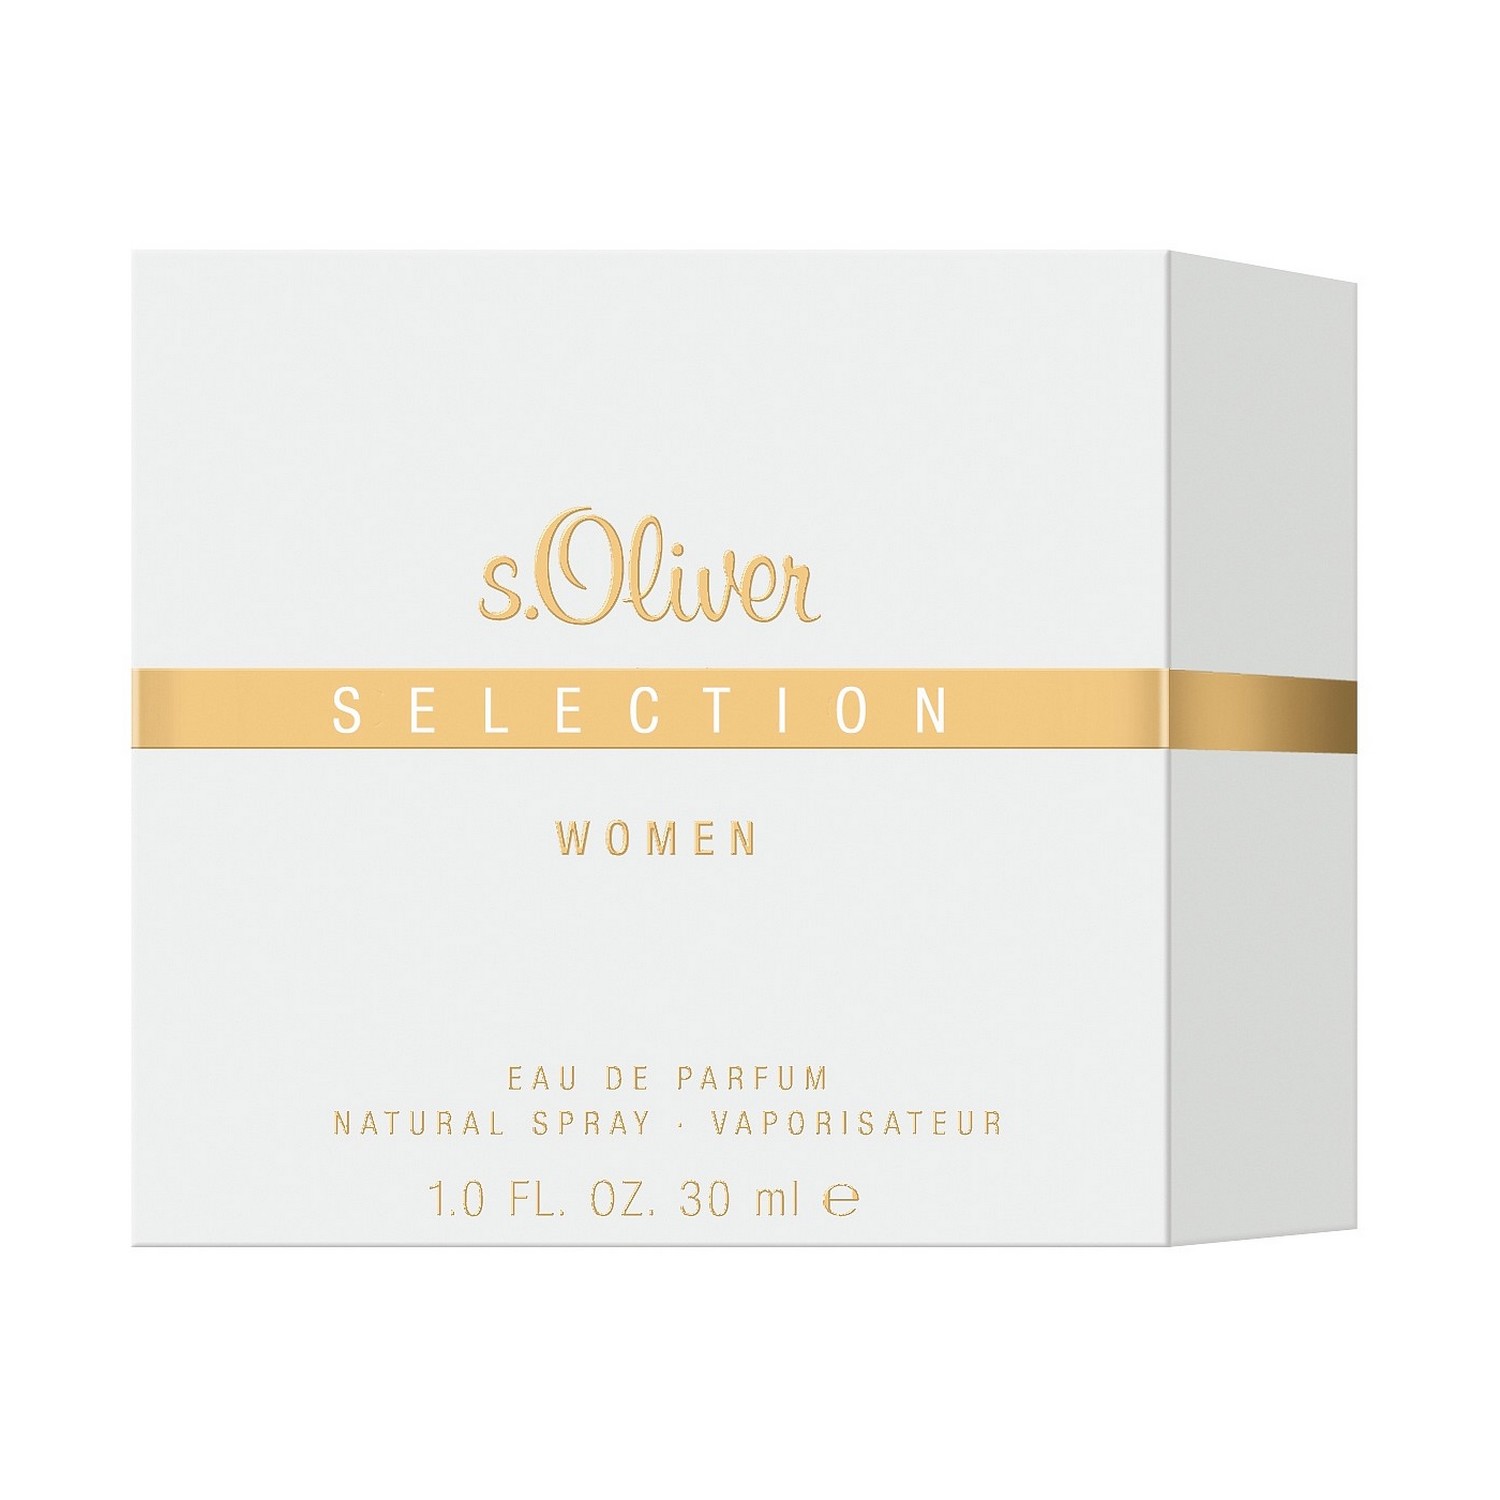 S.Oliver Selection Woman Eau de Parfum 30ml